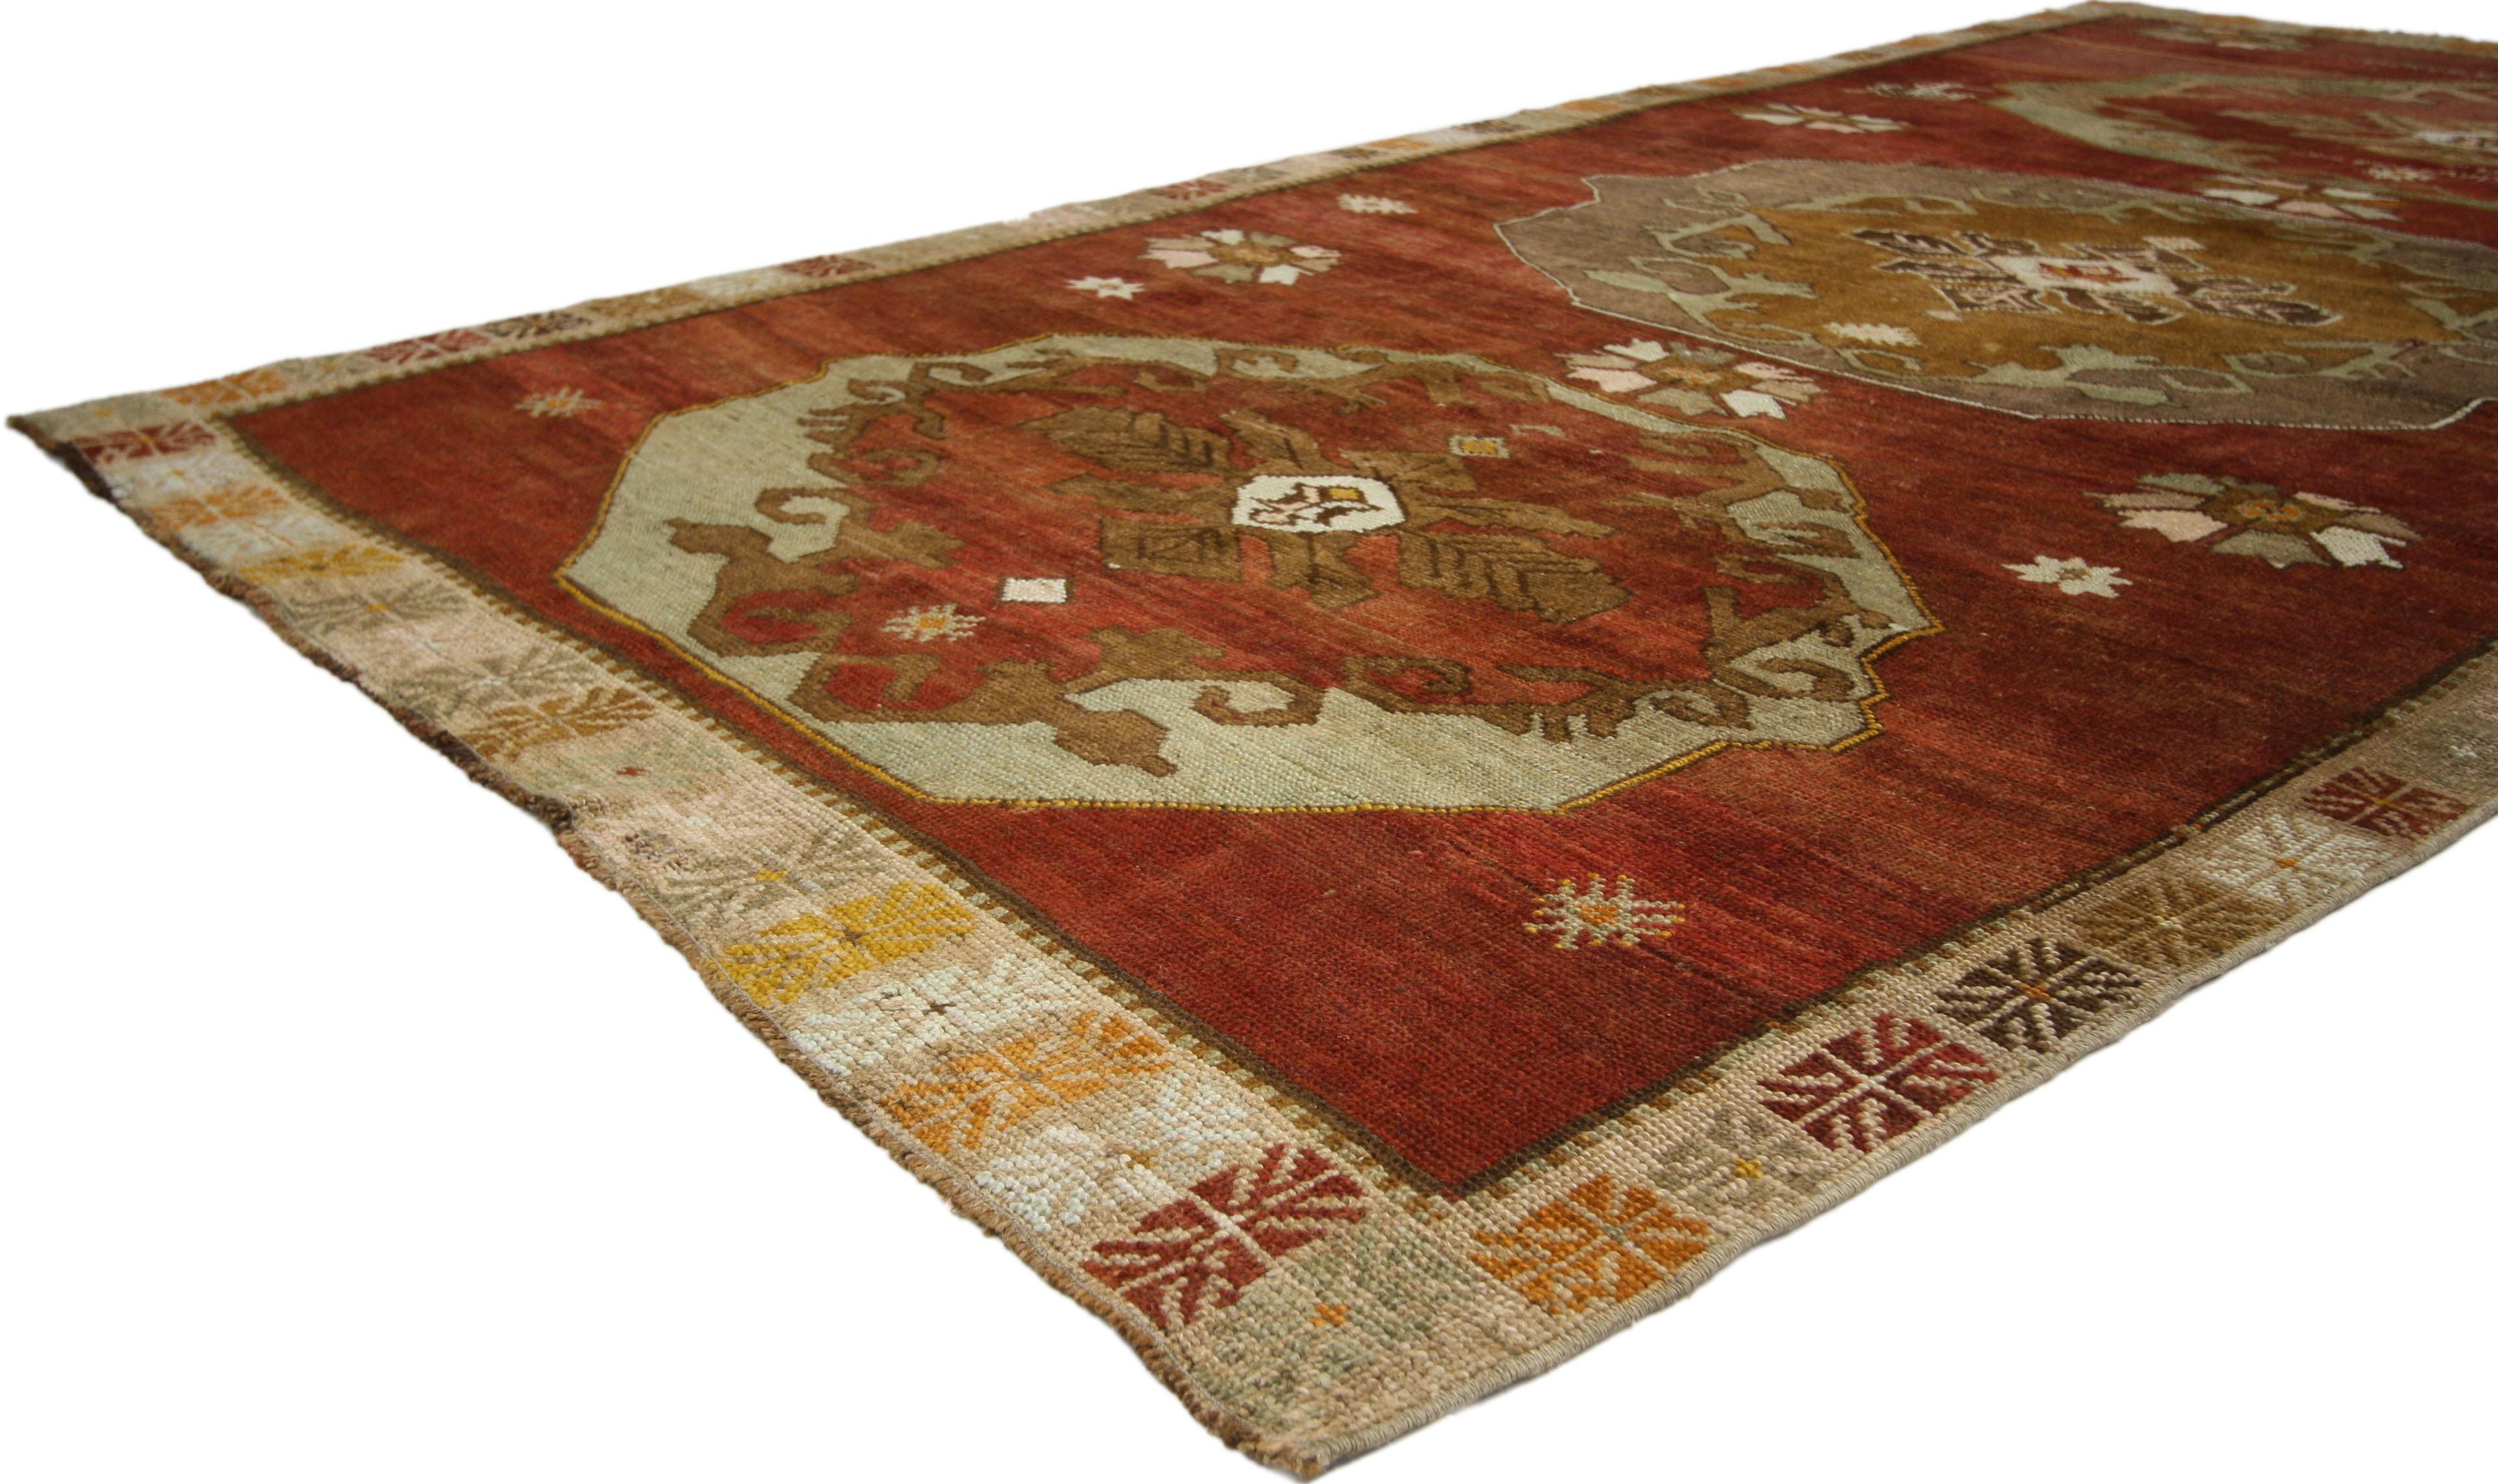 52316, tapis galerie turc vintage Oushak de style Jacobien ou Tudor. Ce tapis turc Oushak vintage en laine nouée à la main présente trois grands médaillons floraux hexagonaux répartis sur un champ rouge abrasé. Les médaillons contiennent chacun des